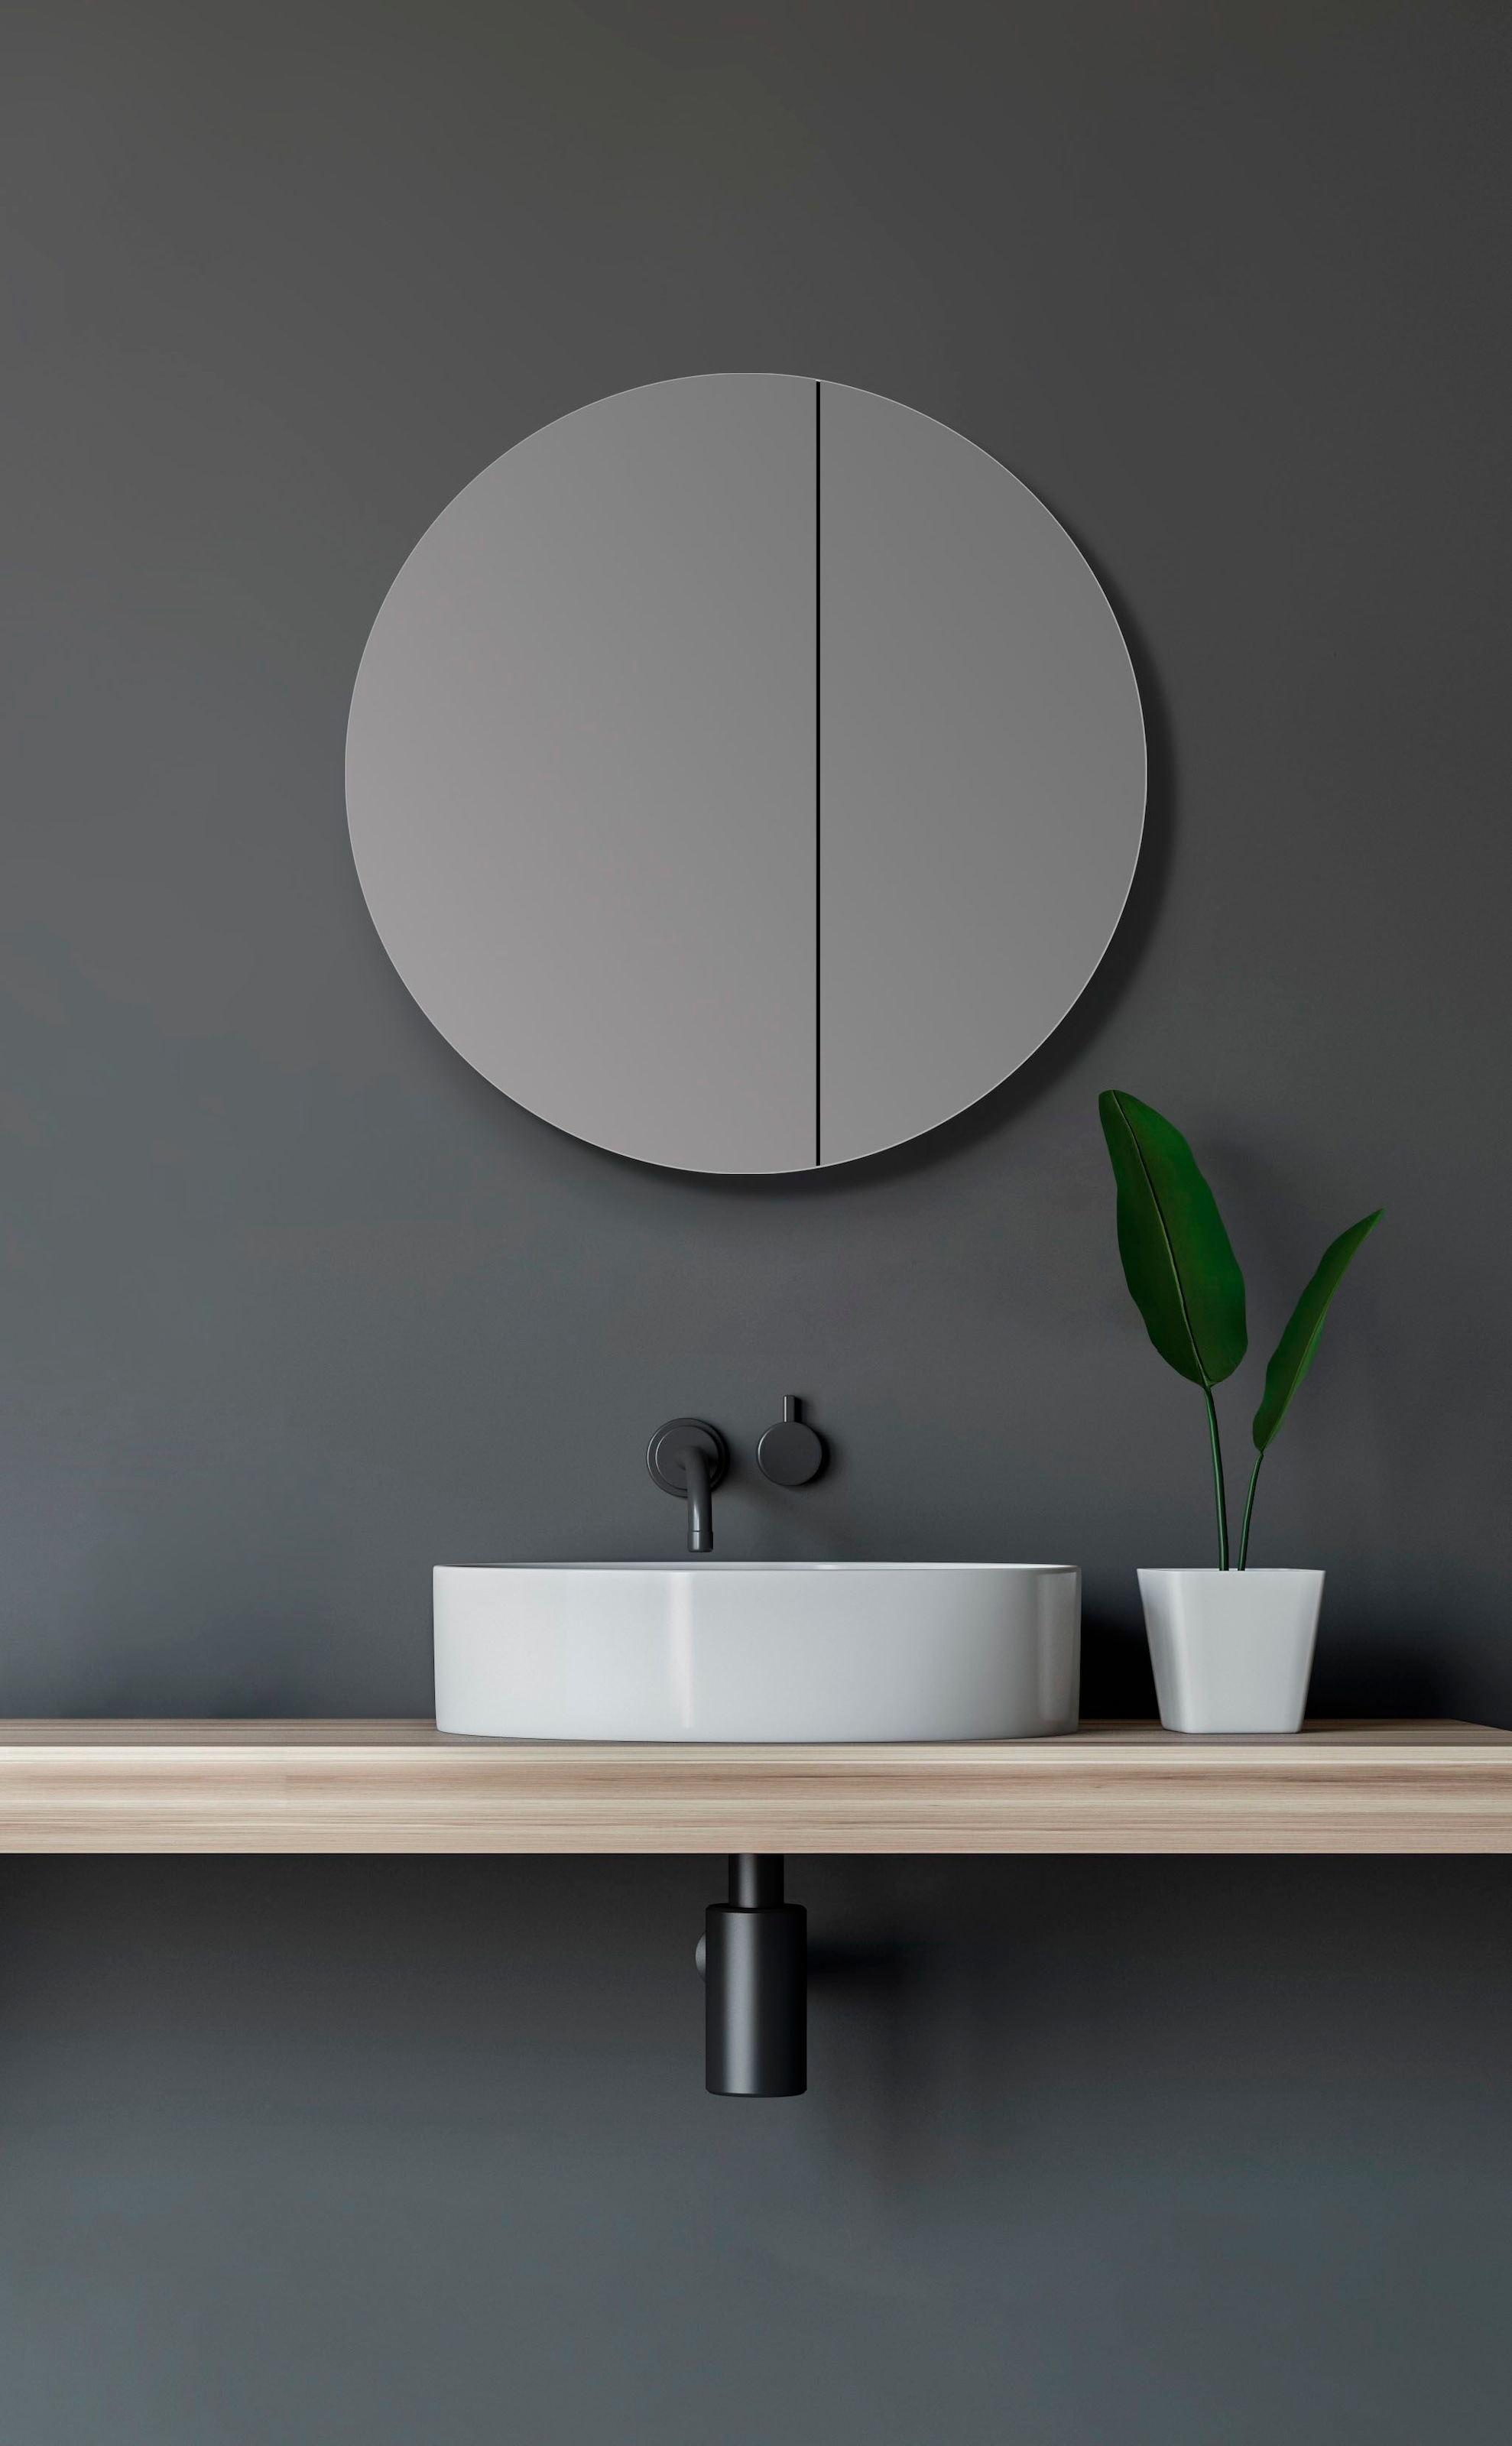 Talos Badezimmerspiegelschrank, Ø: 60 cm, aus Aluminium und Echtglas, IP24